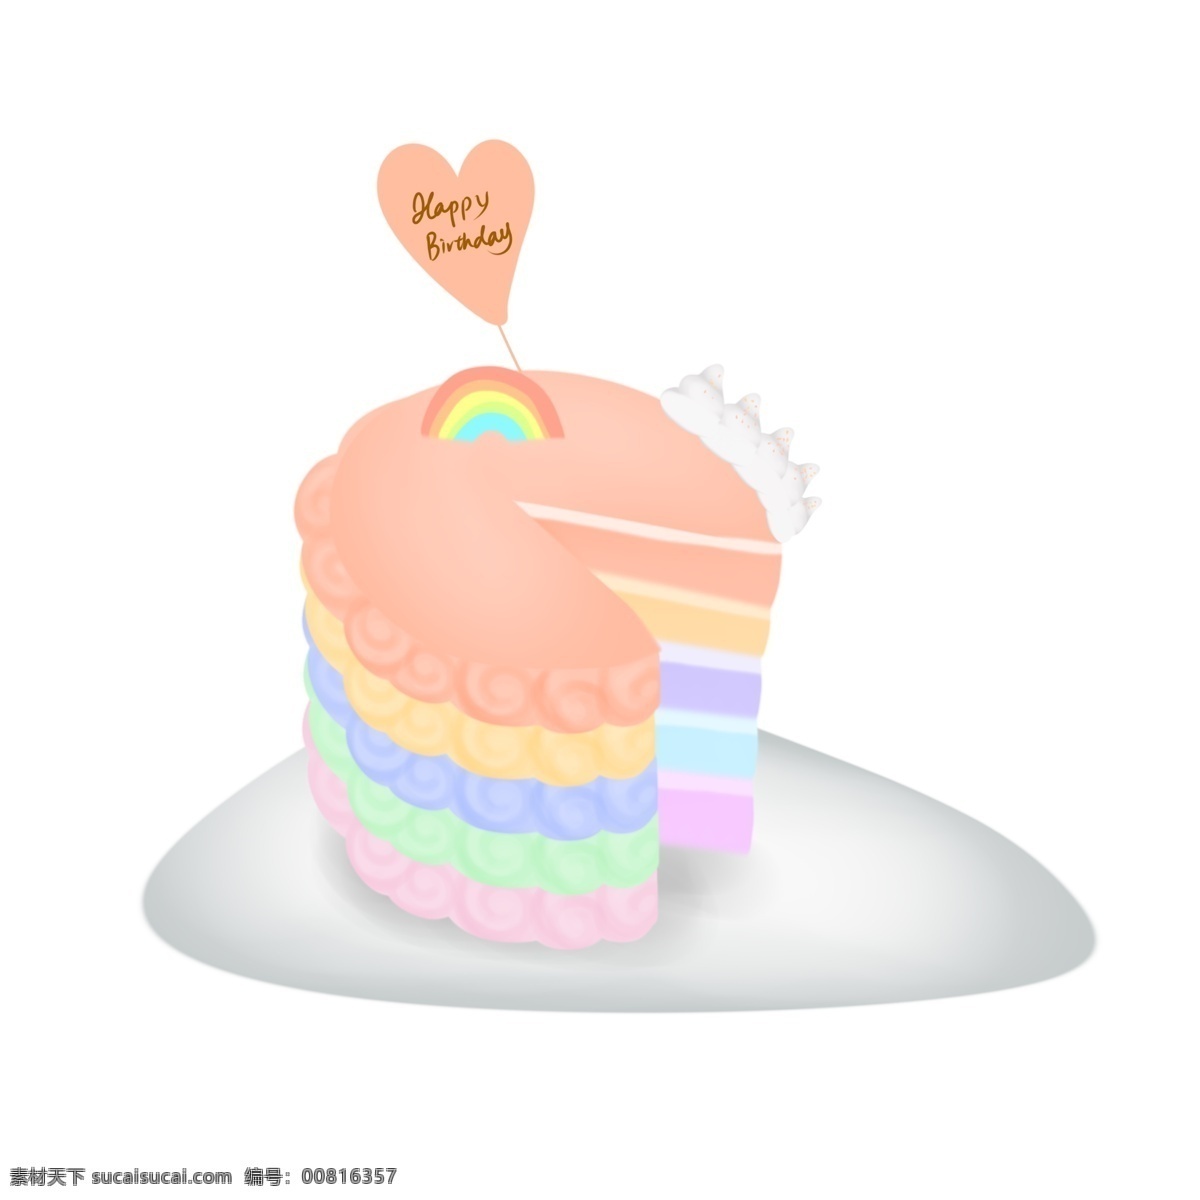 马卡 龙 色 彩虹 多层 生日蛋糕 生日祝福 彩色 马卡龙 千层蛋糕 奶油 彩虹蛋糕 柔色 装饰 生日贺卡